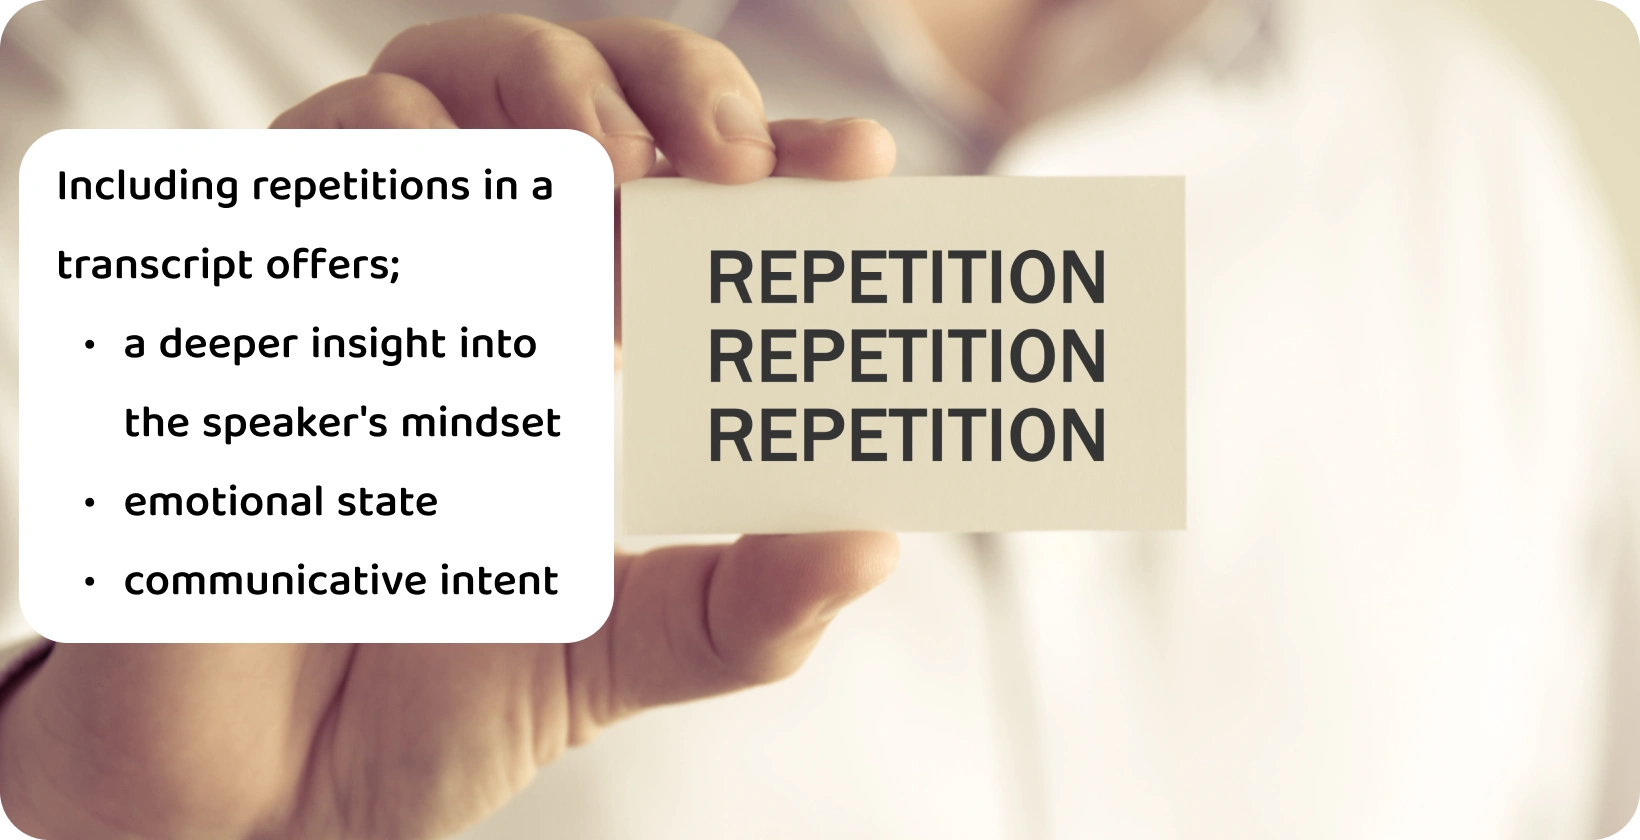 Közeli kép egy "Ismétlés" szót tartalmazó kártyát tartó kézről, amely verbatim átiratban illusztrálja az ismétlések fogalmát.